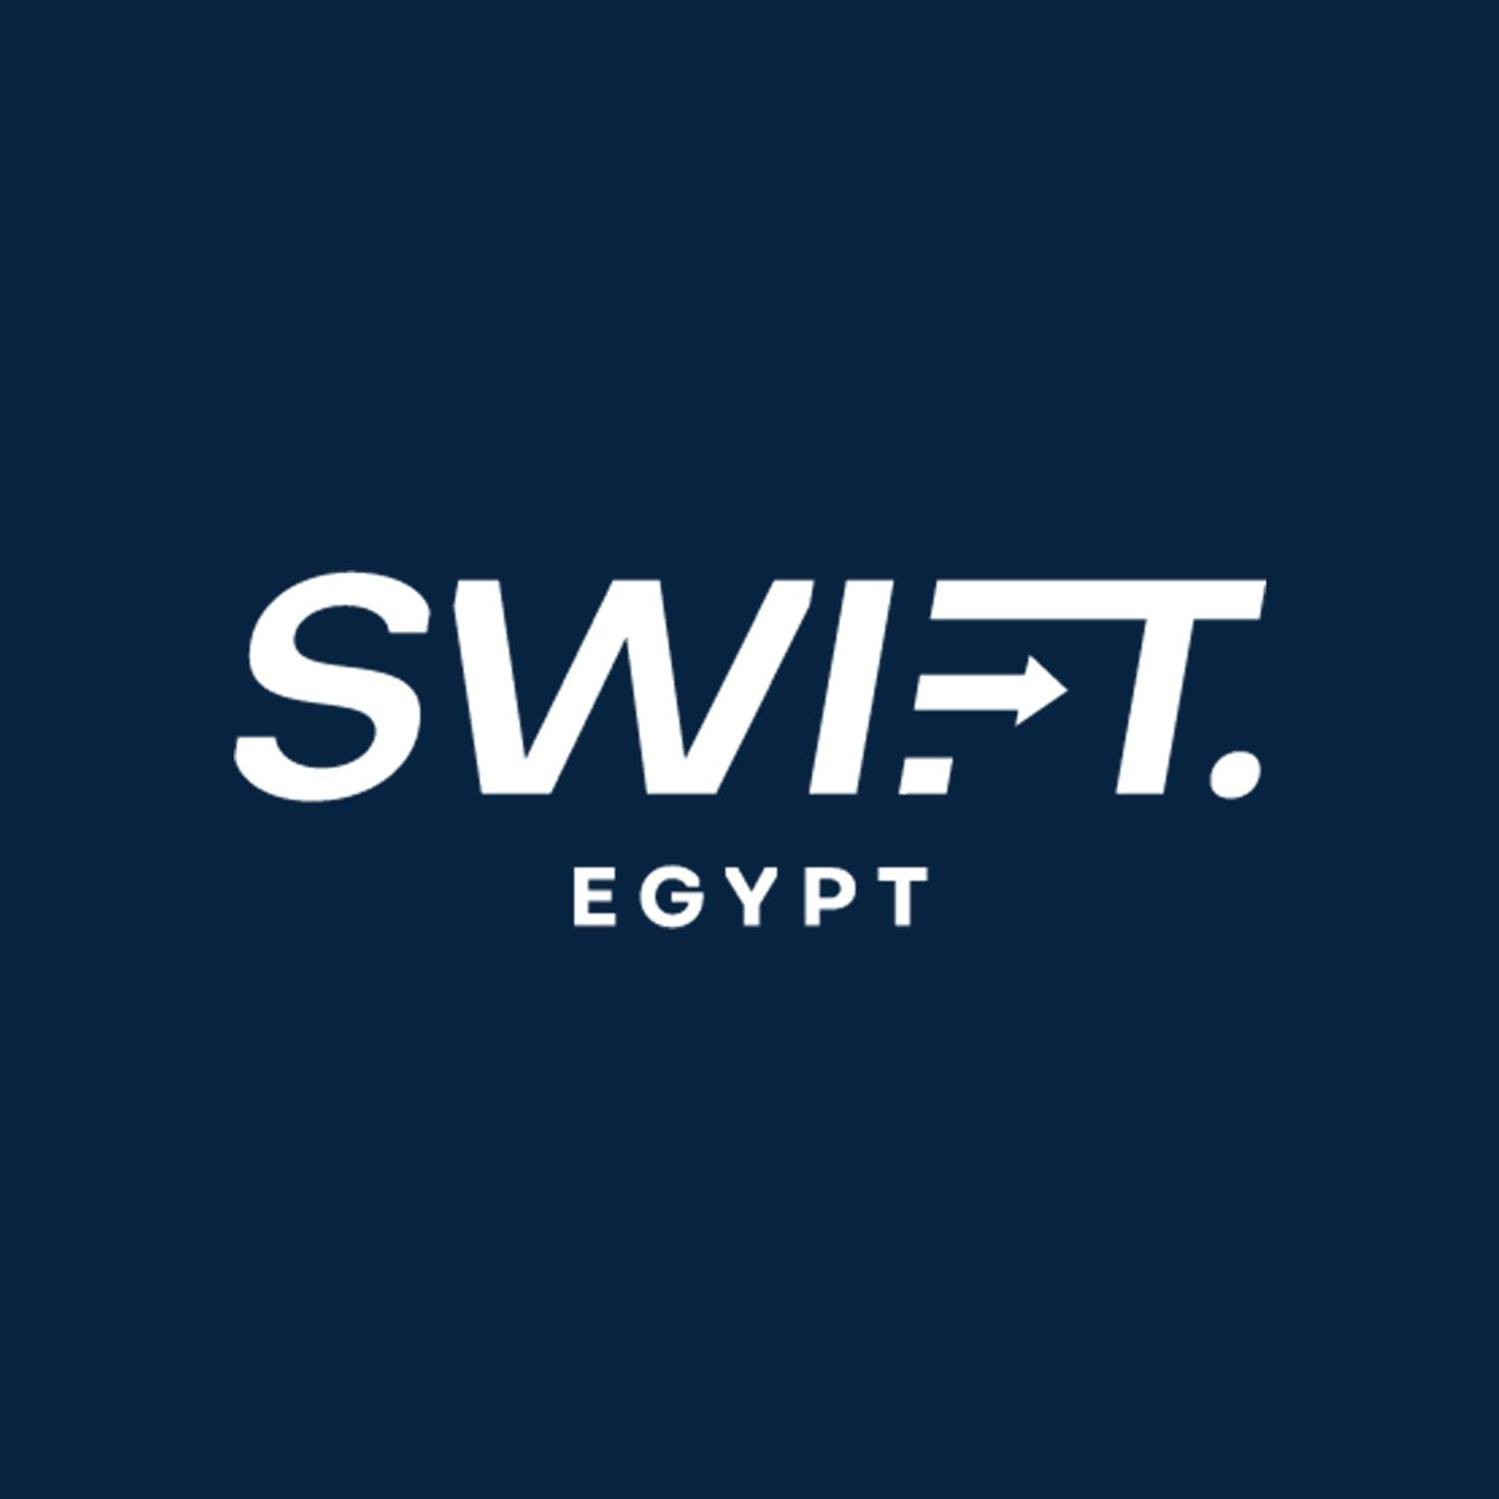 Swift Egypt